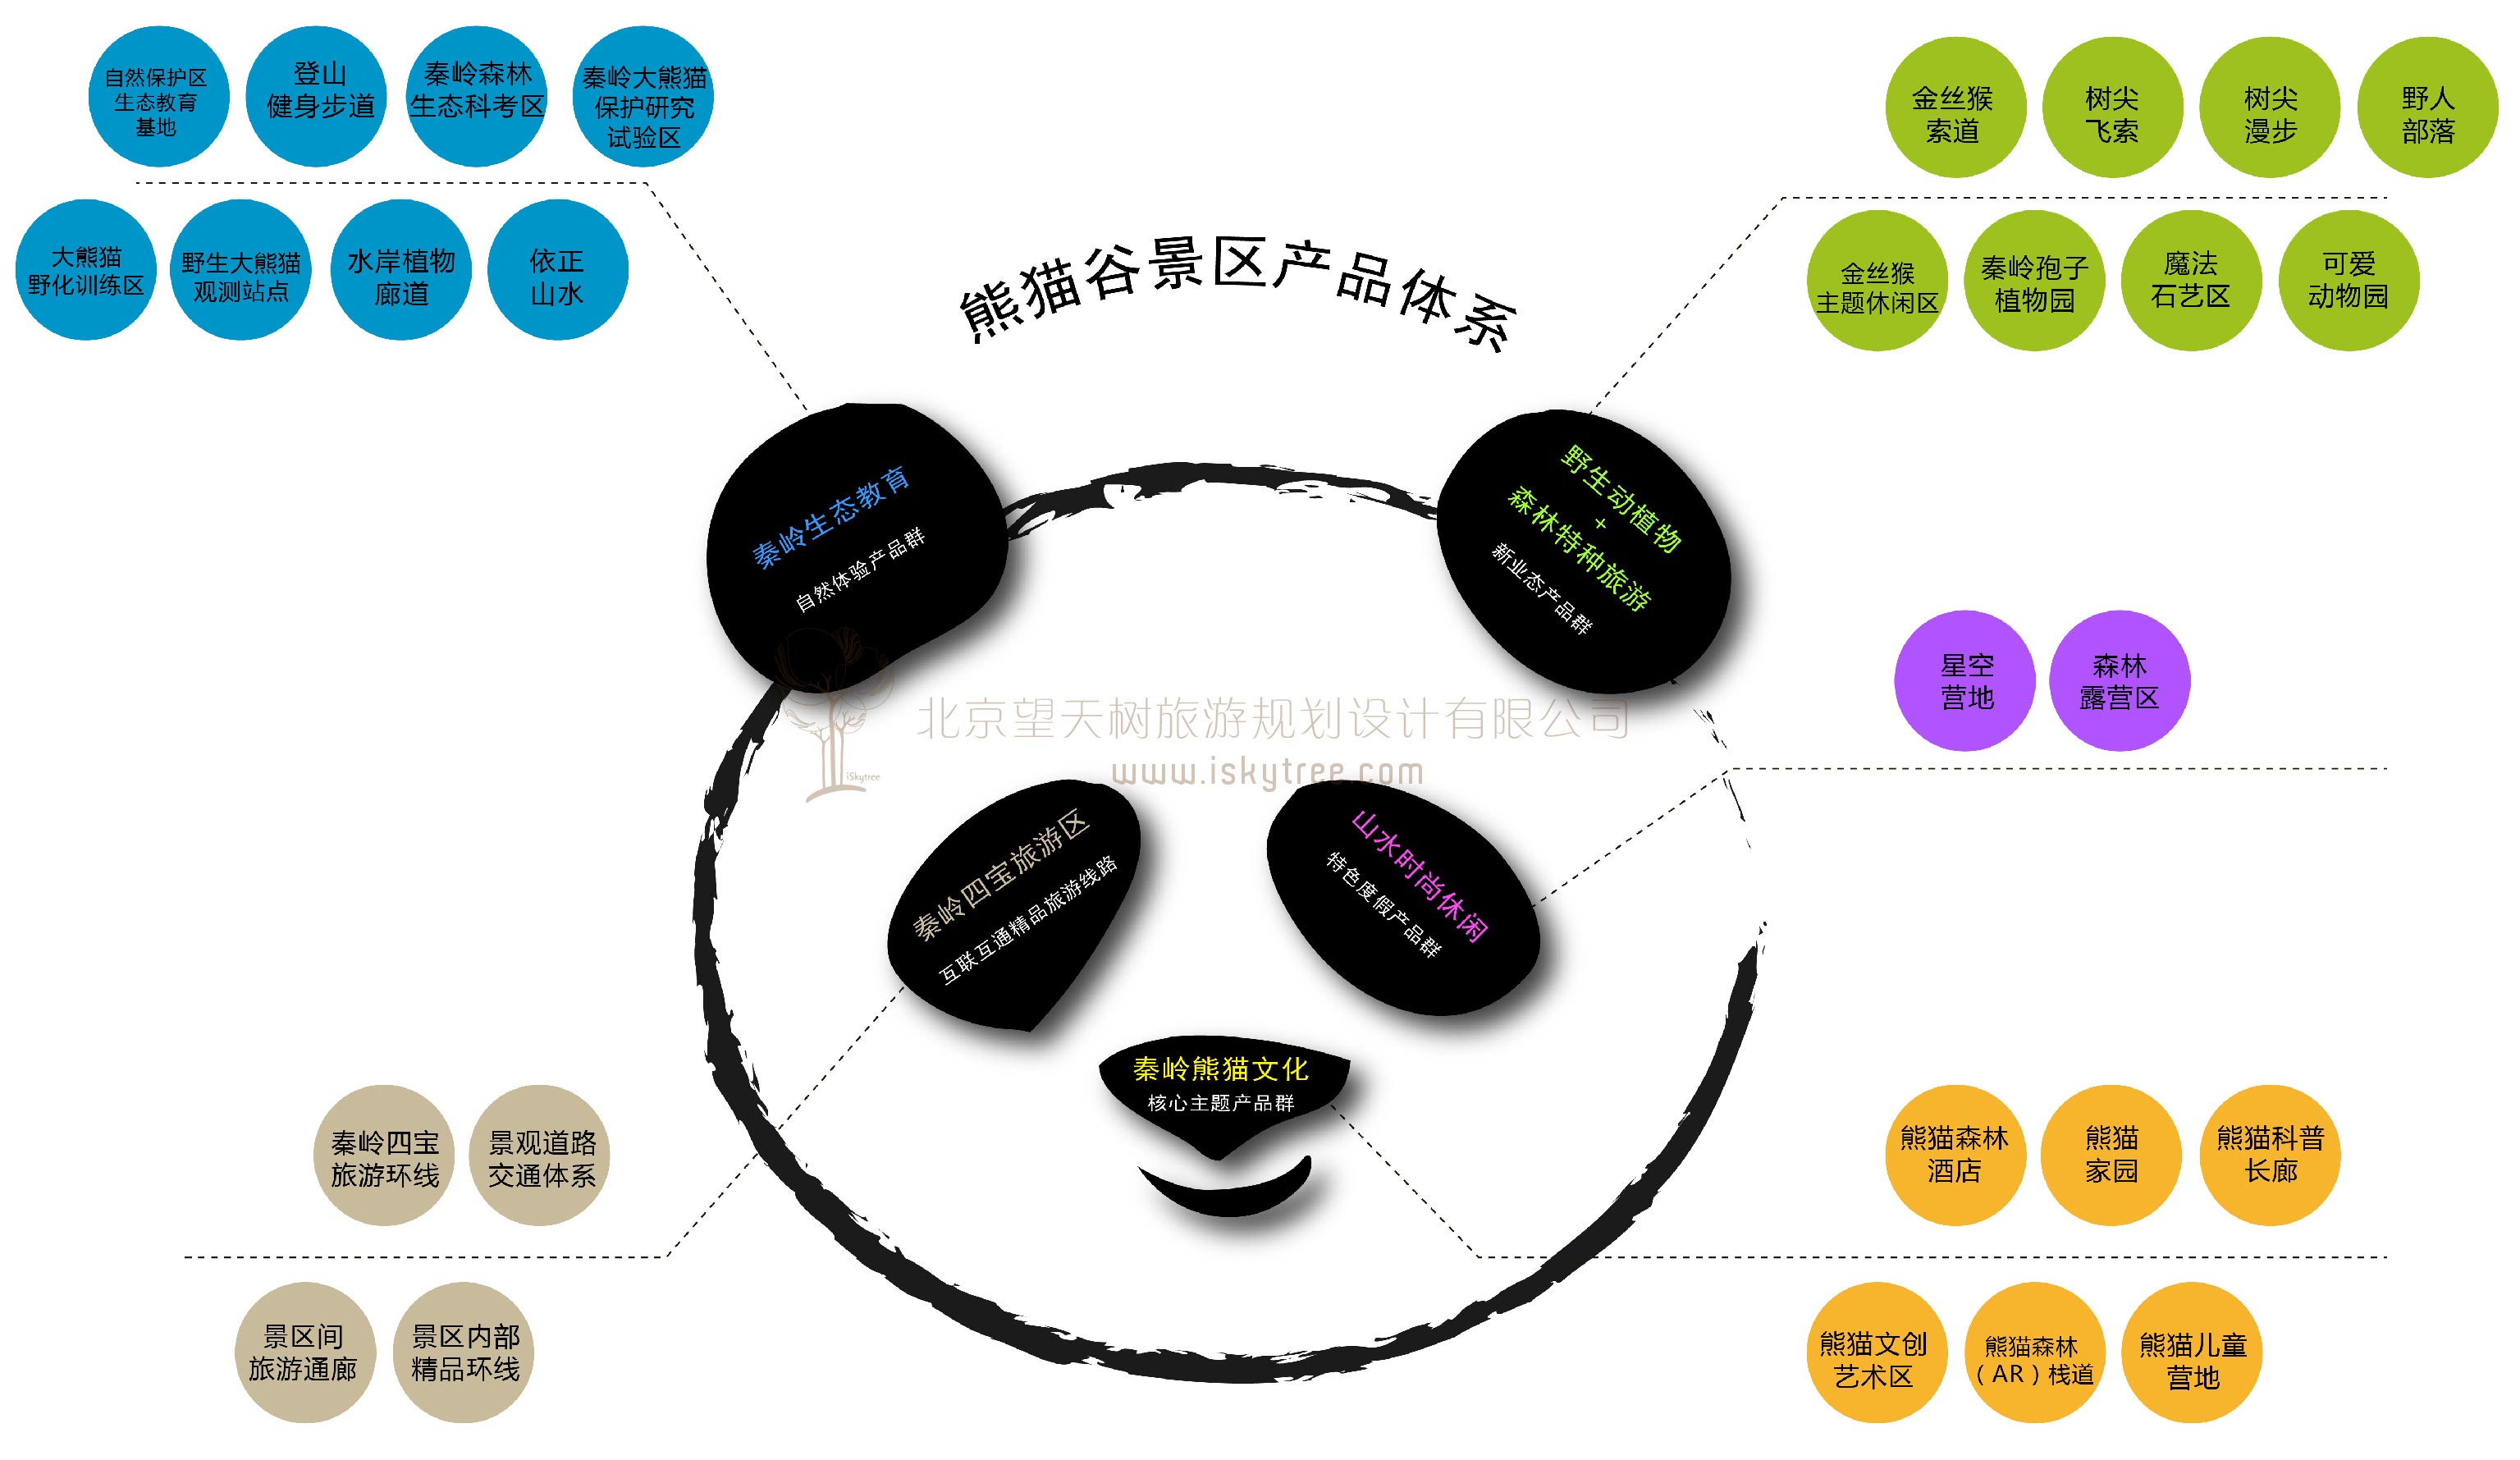 佛坪熊猫谷景区熊猫主题旅游产品体系设计